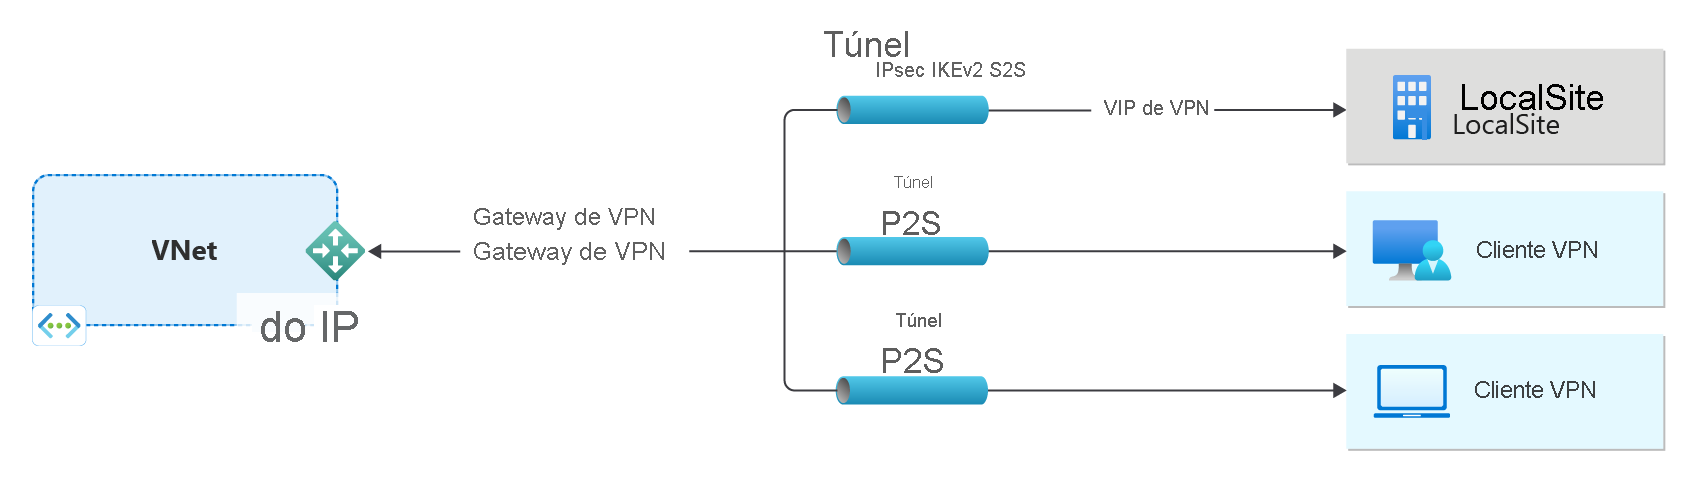 Diagrama que mostra uma rede virtual e um gateway VPN.